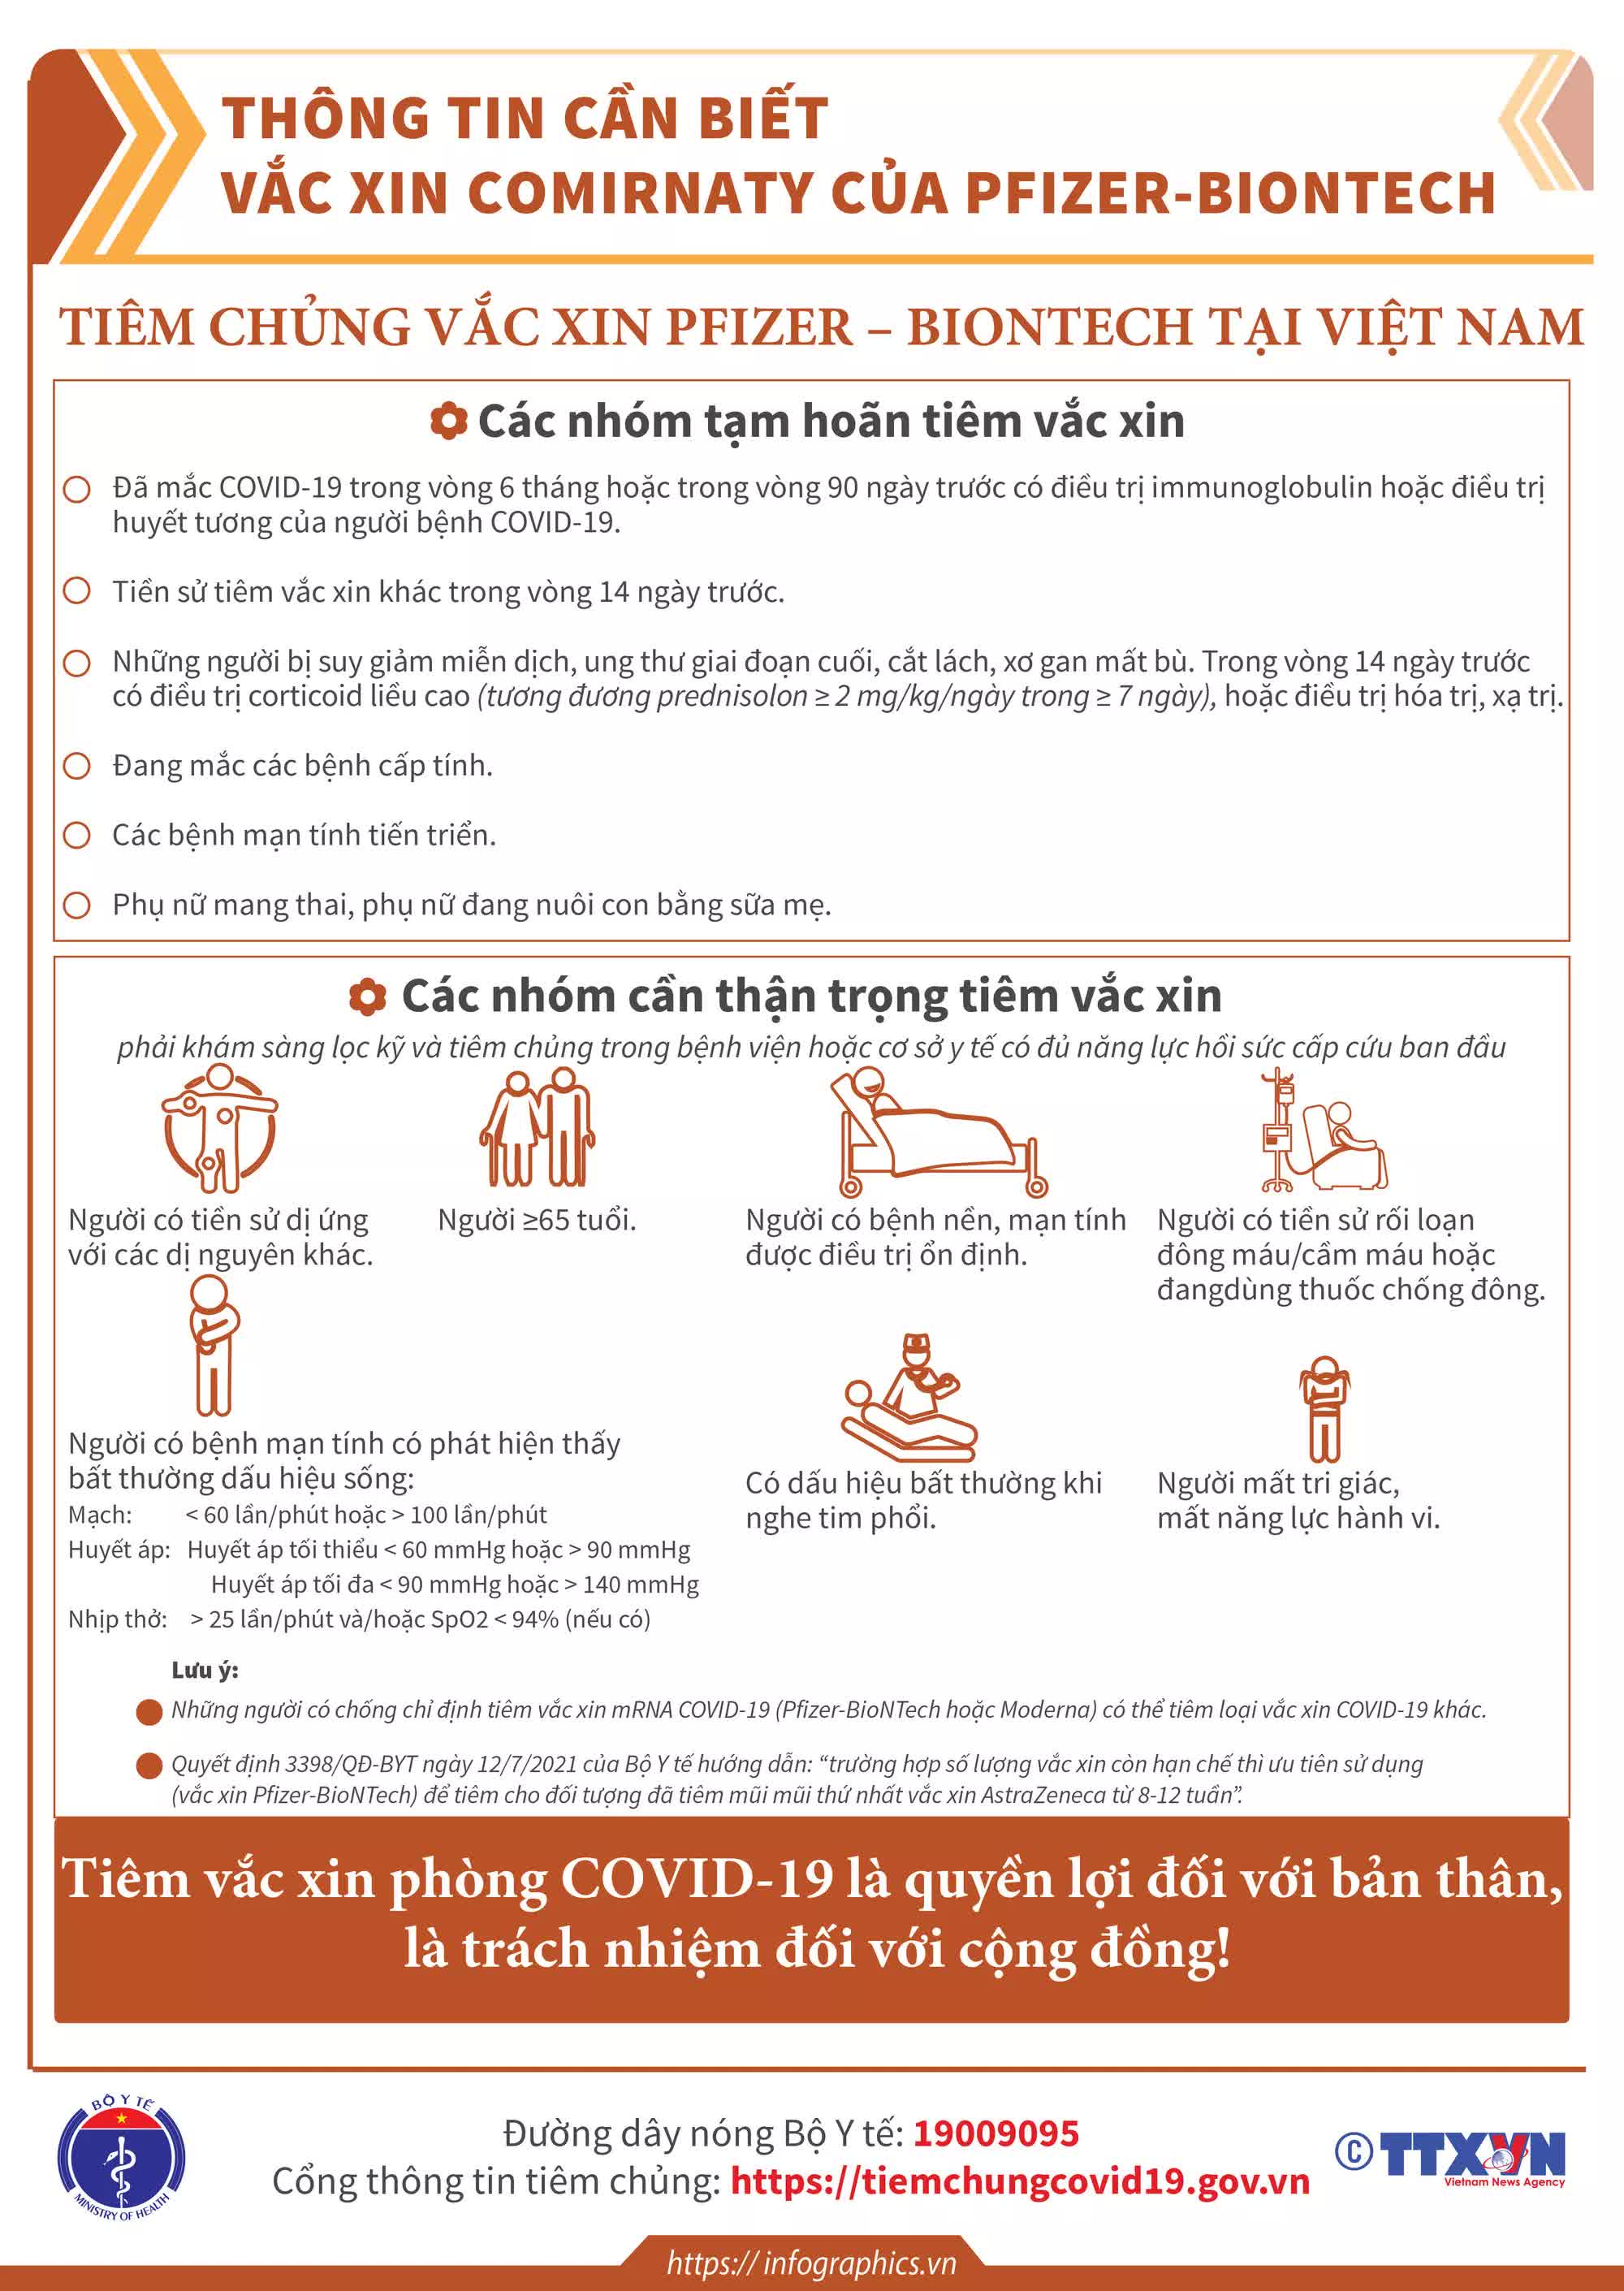 Thông tin cần biết về một số vaccine COVID-19 đang triển khai tiêm chủng tại Việt Nam. - Ảnh 15.